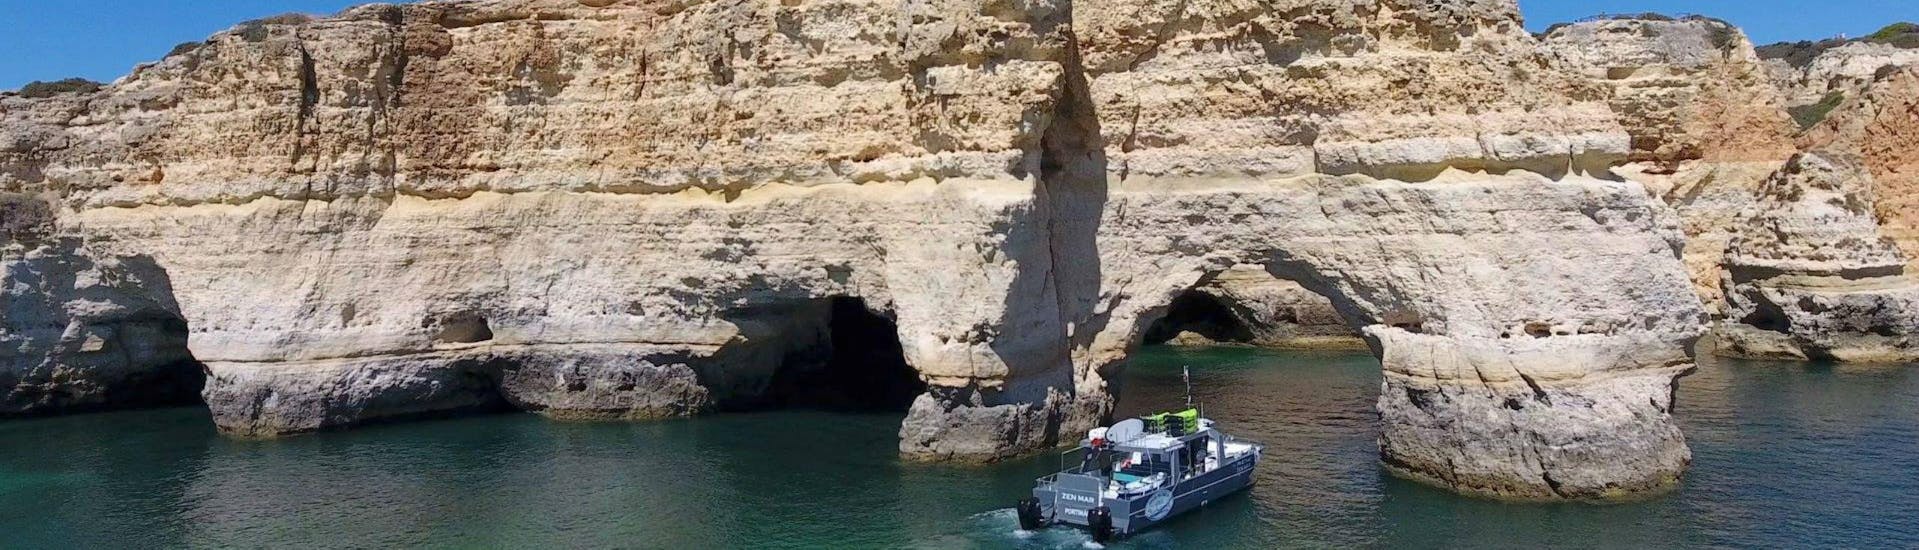 Le catamaran géré par SeaAlgarve Albufeira se fraie un chemin le long des formations rocheuses spectaculaires de la côte de l'Algarve pendant la balade en bateau à Benagil avec kayak ou SUP.